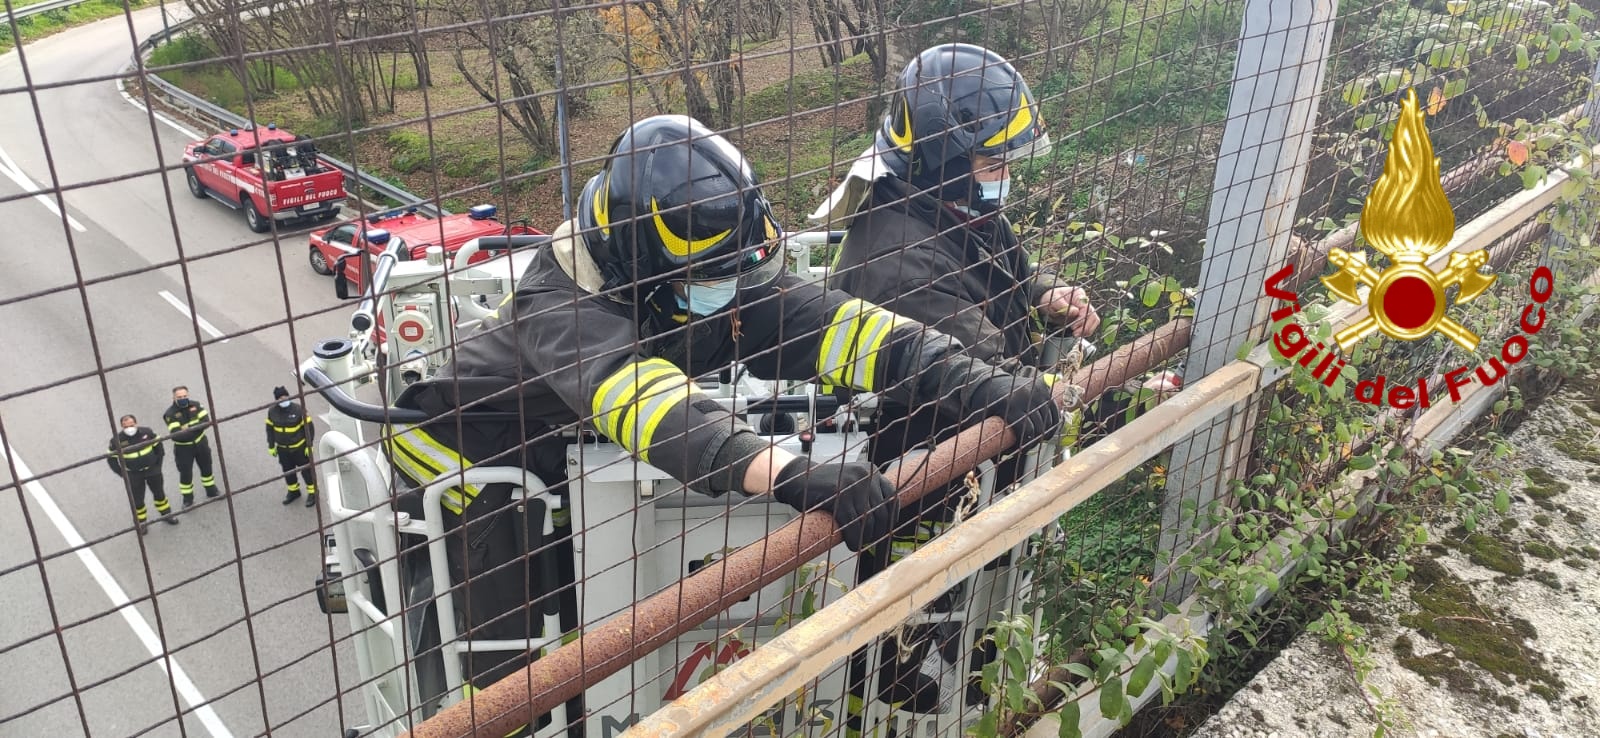 Avellino| Tubolari pericolanti dal viadotto sulla variante, intervento dei vigili del fuoco a San Tommaso